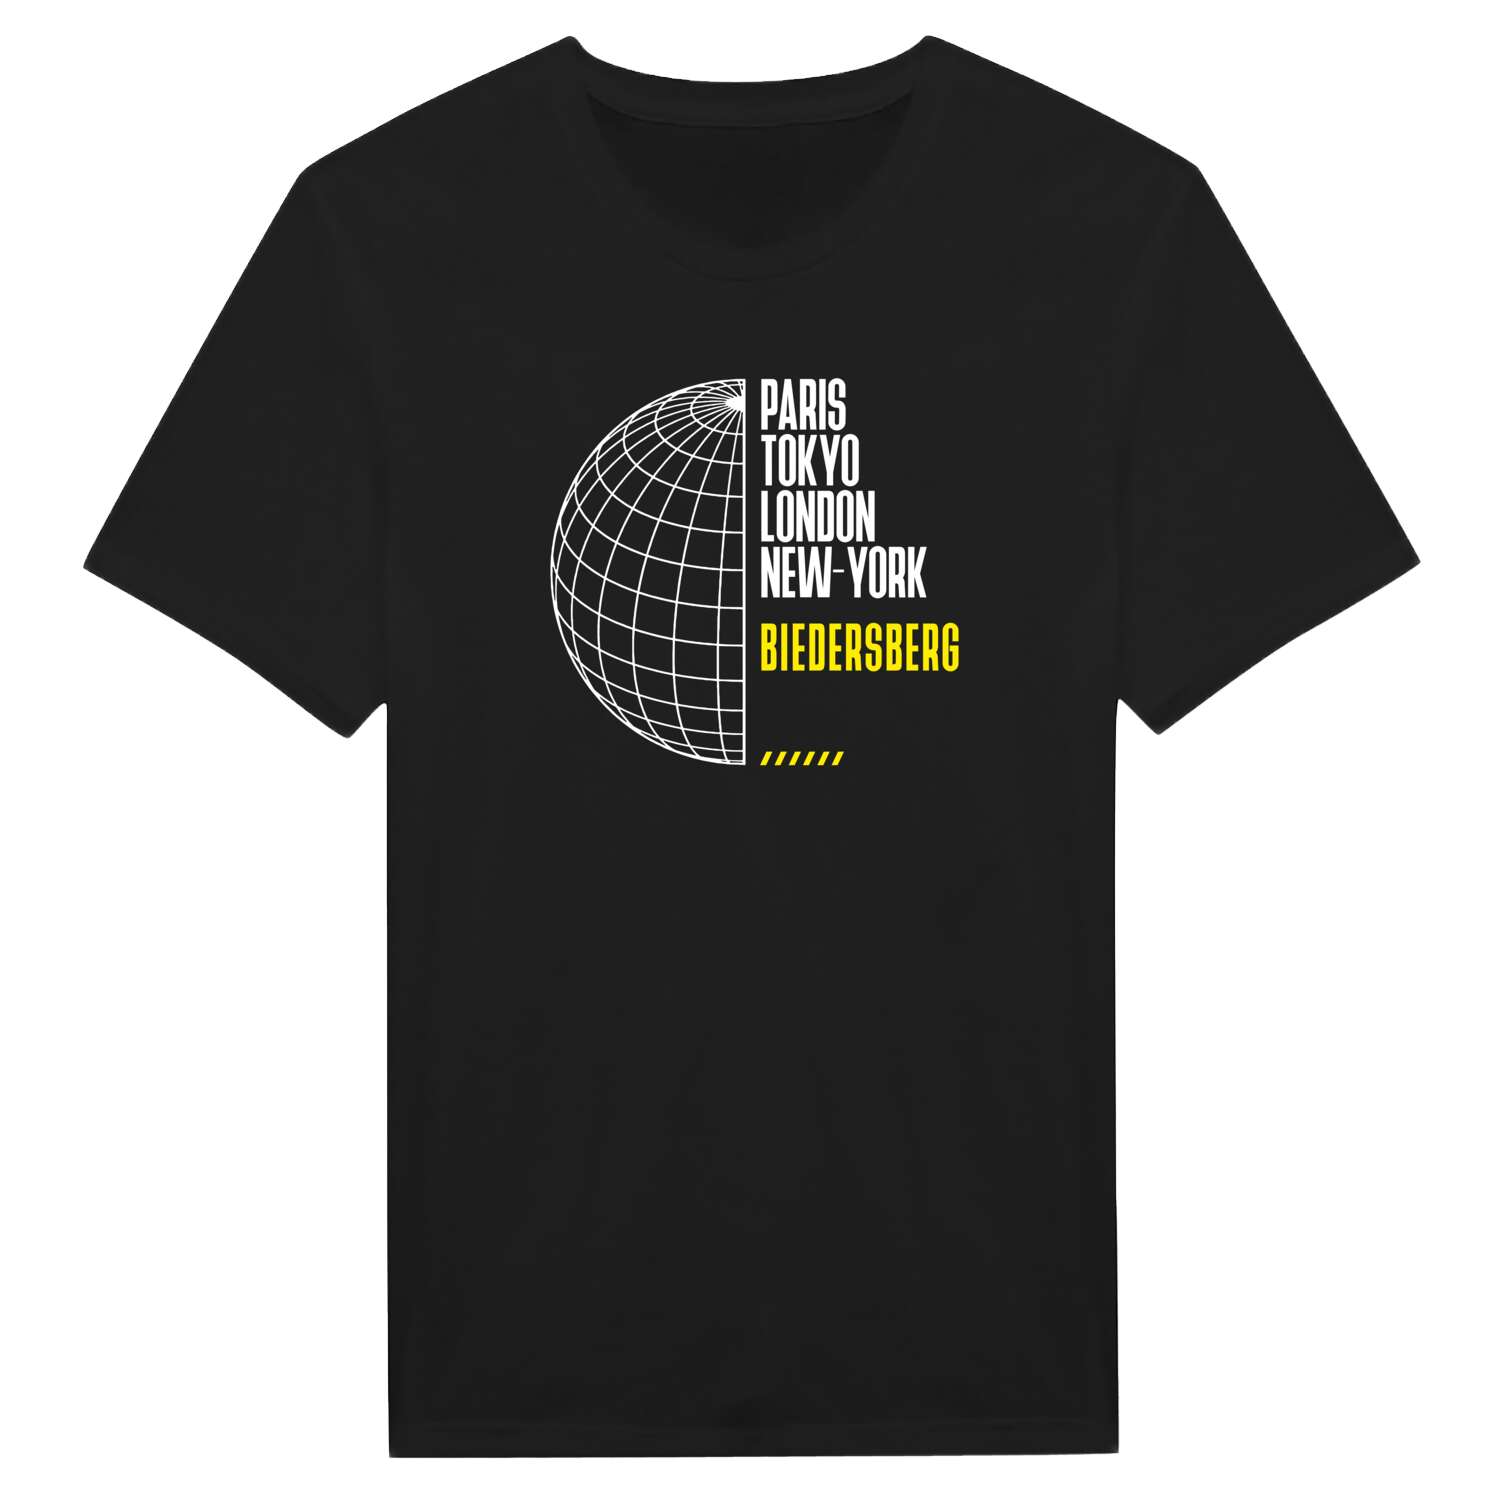 Biedersberg T-Shirt »Paris Tokyo London«